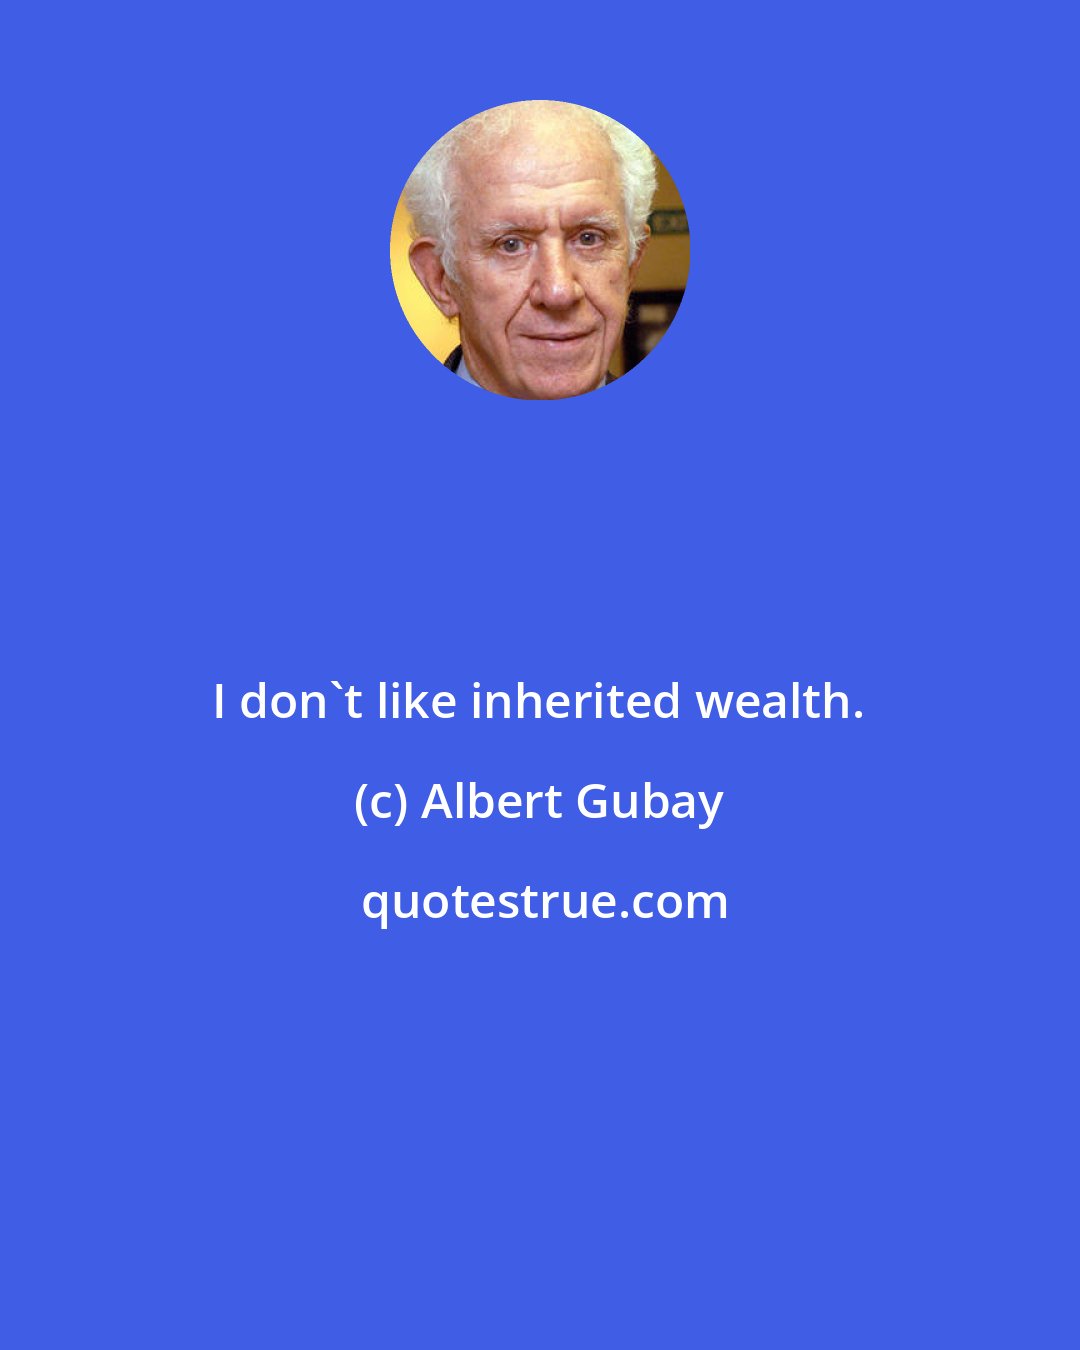 Albert Gubay: I don't like inherited wealth.